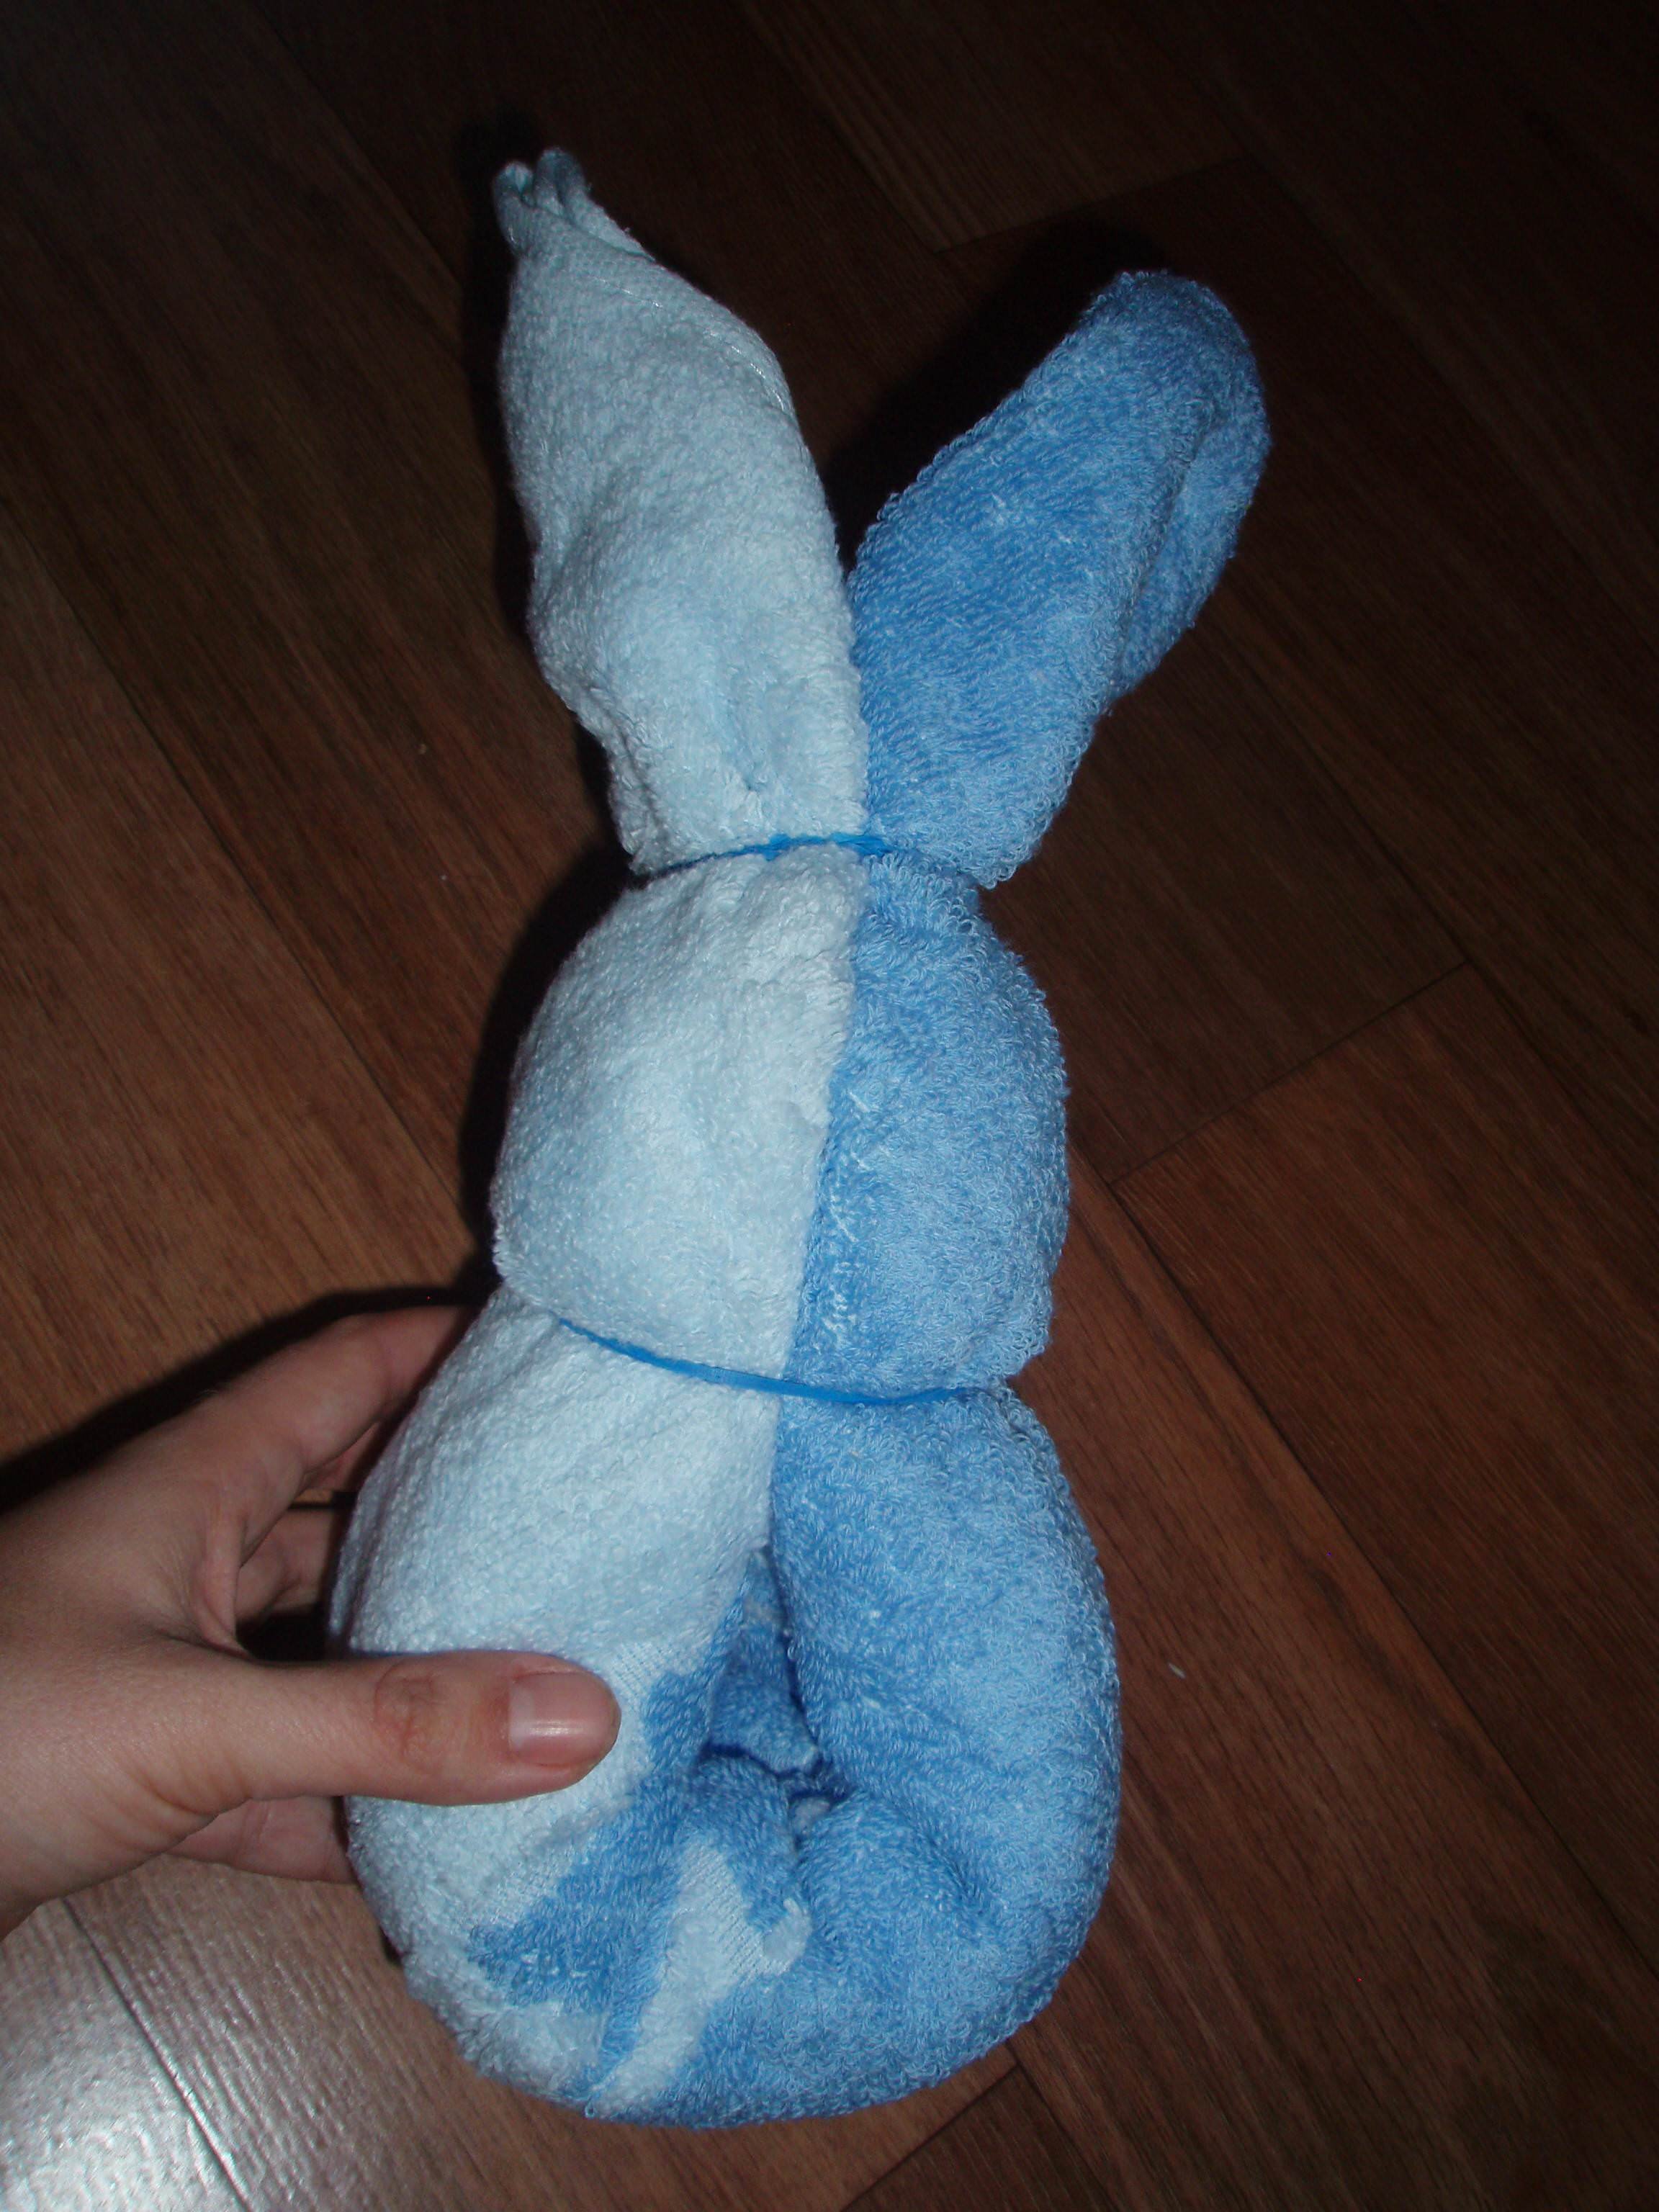 Зайчик из полотенца. Заяц из полотенца. Кролик из полотенца. Зайка из полотенца. Игрушка из полотенца заяц.